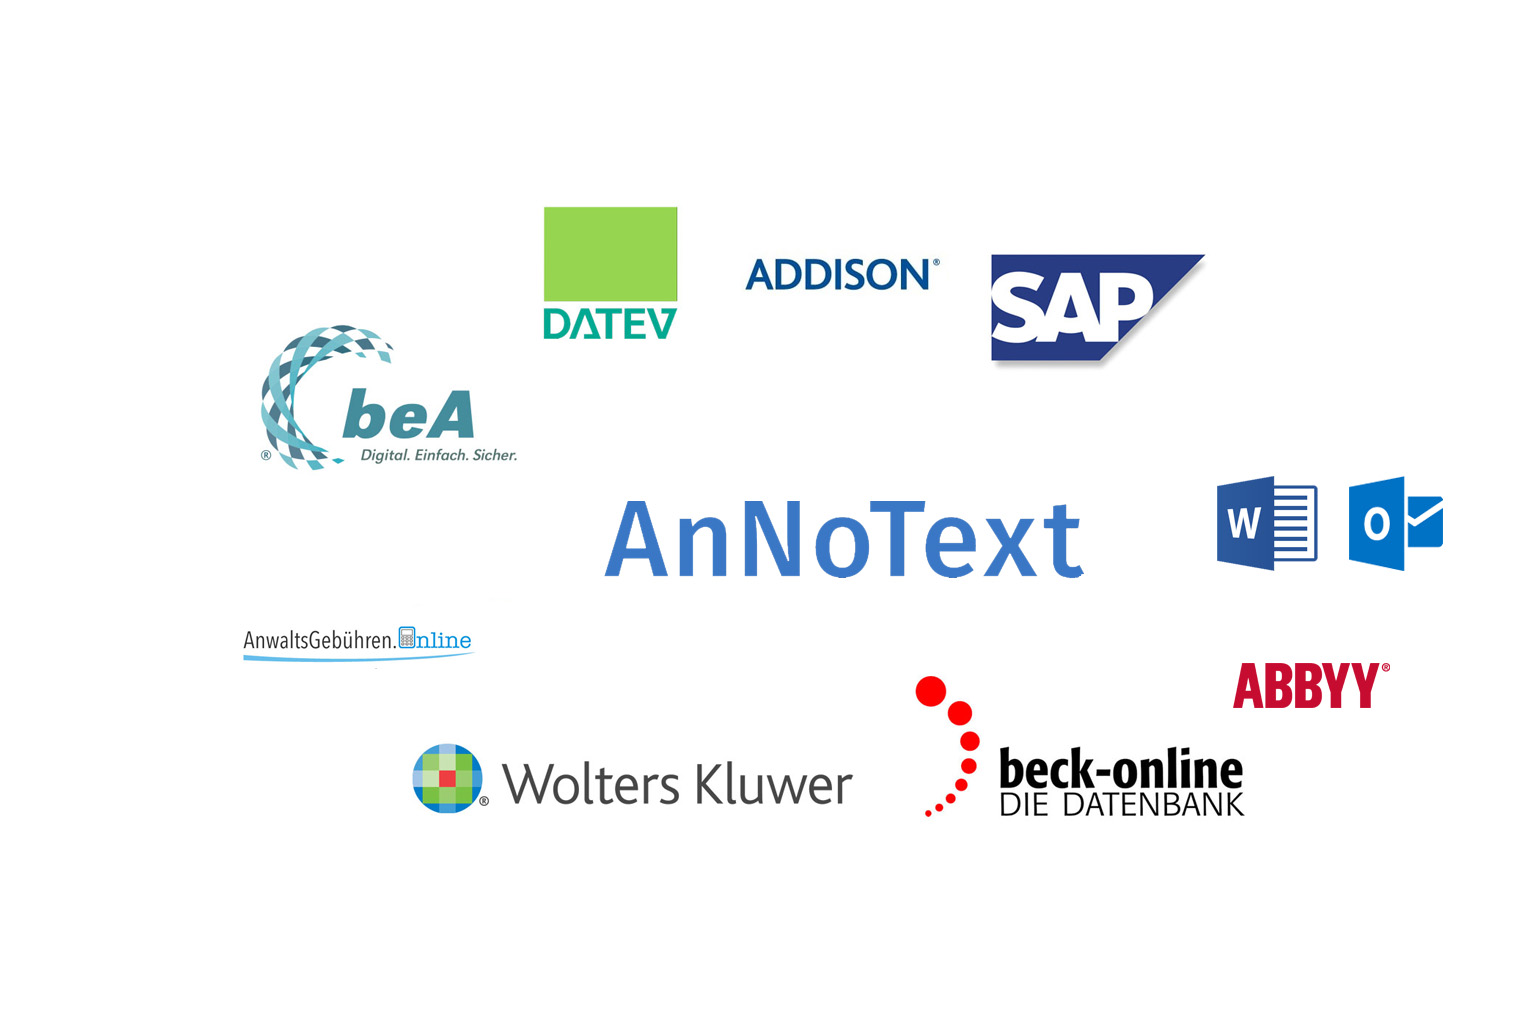 AnNoText bietet die Anbindung von weiteren Diensten